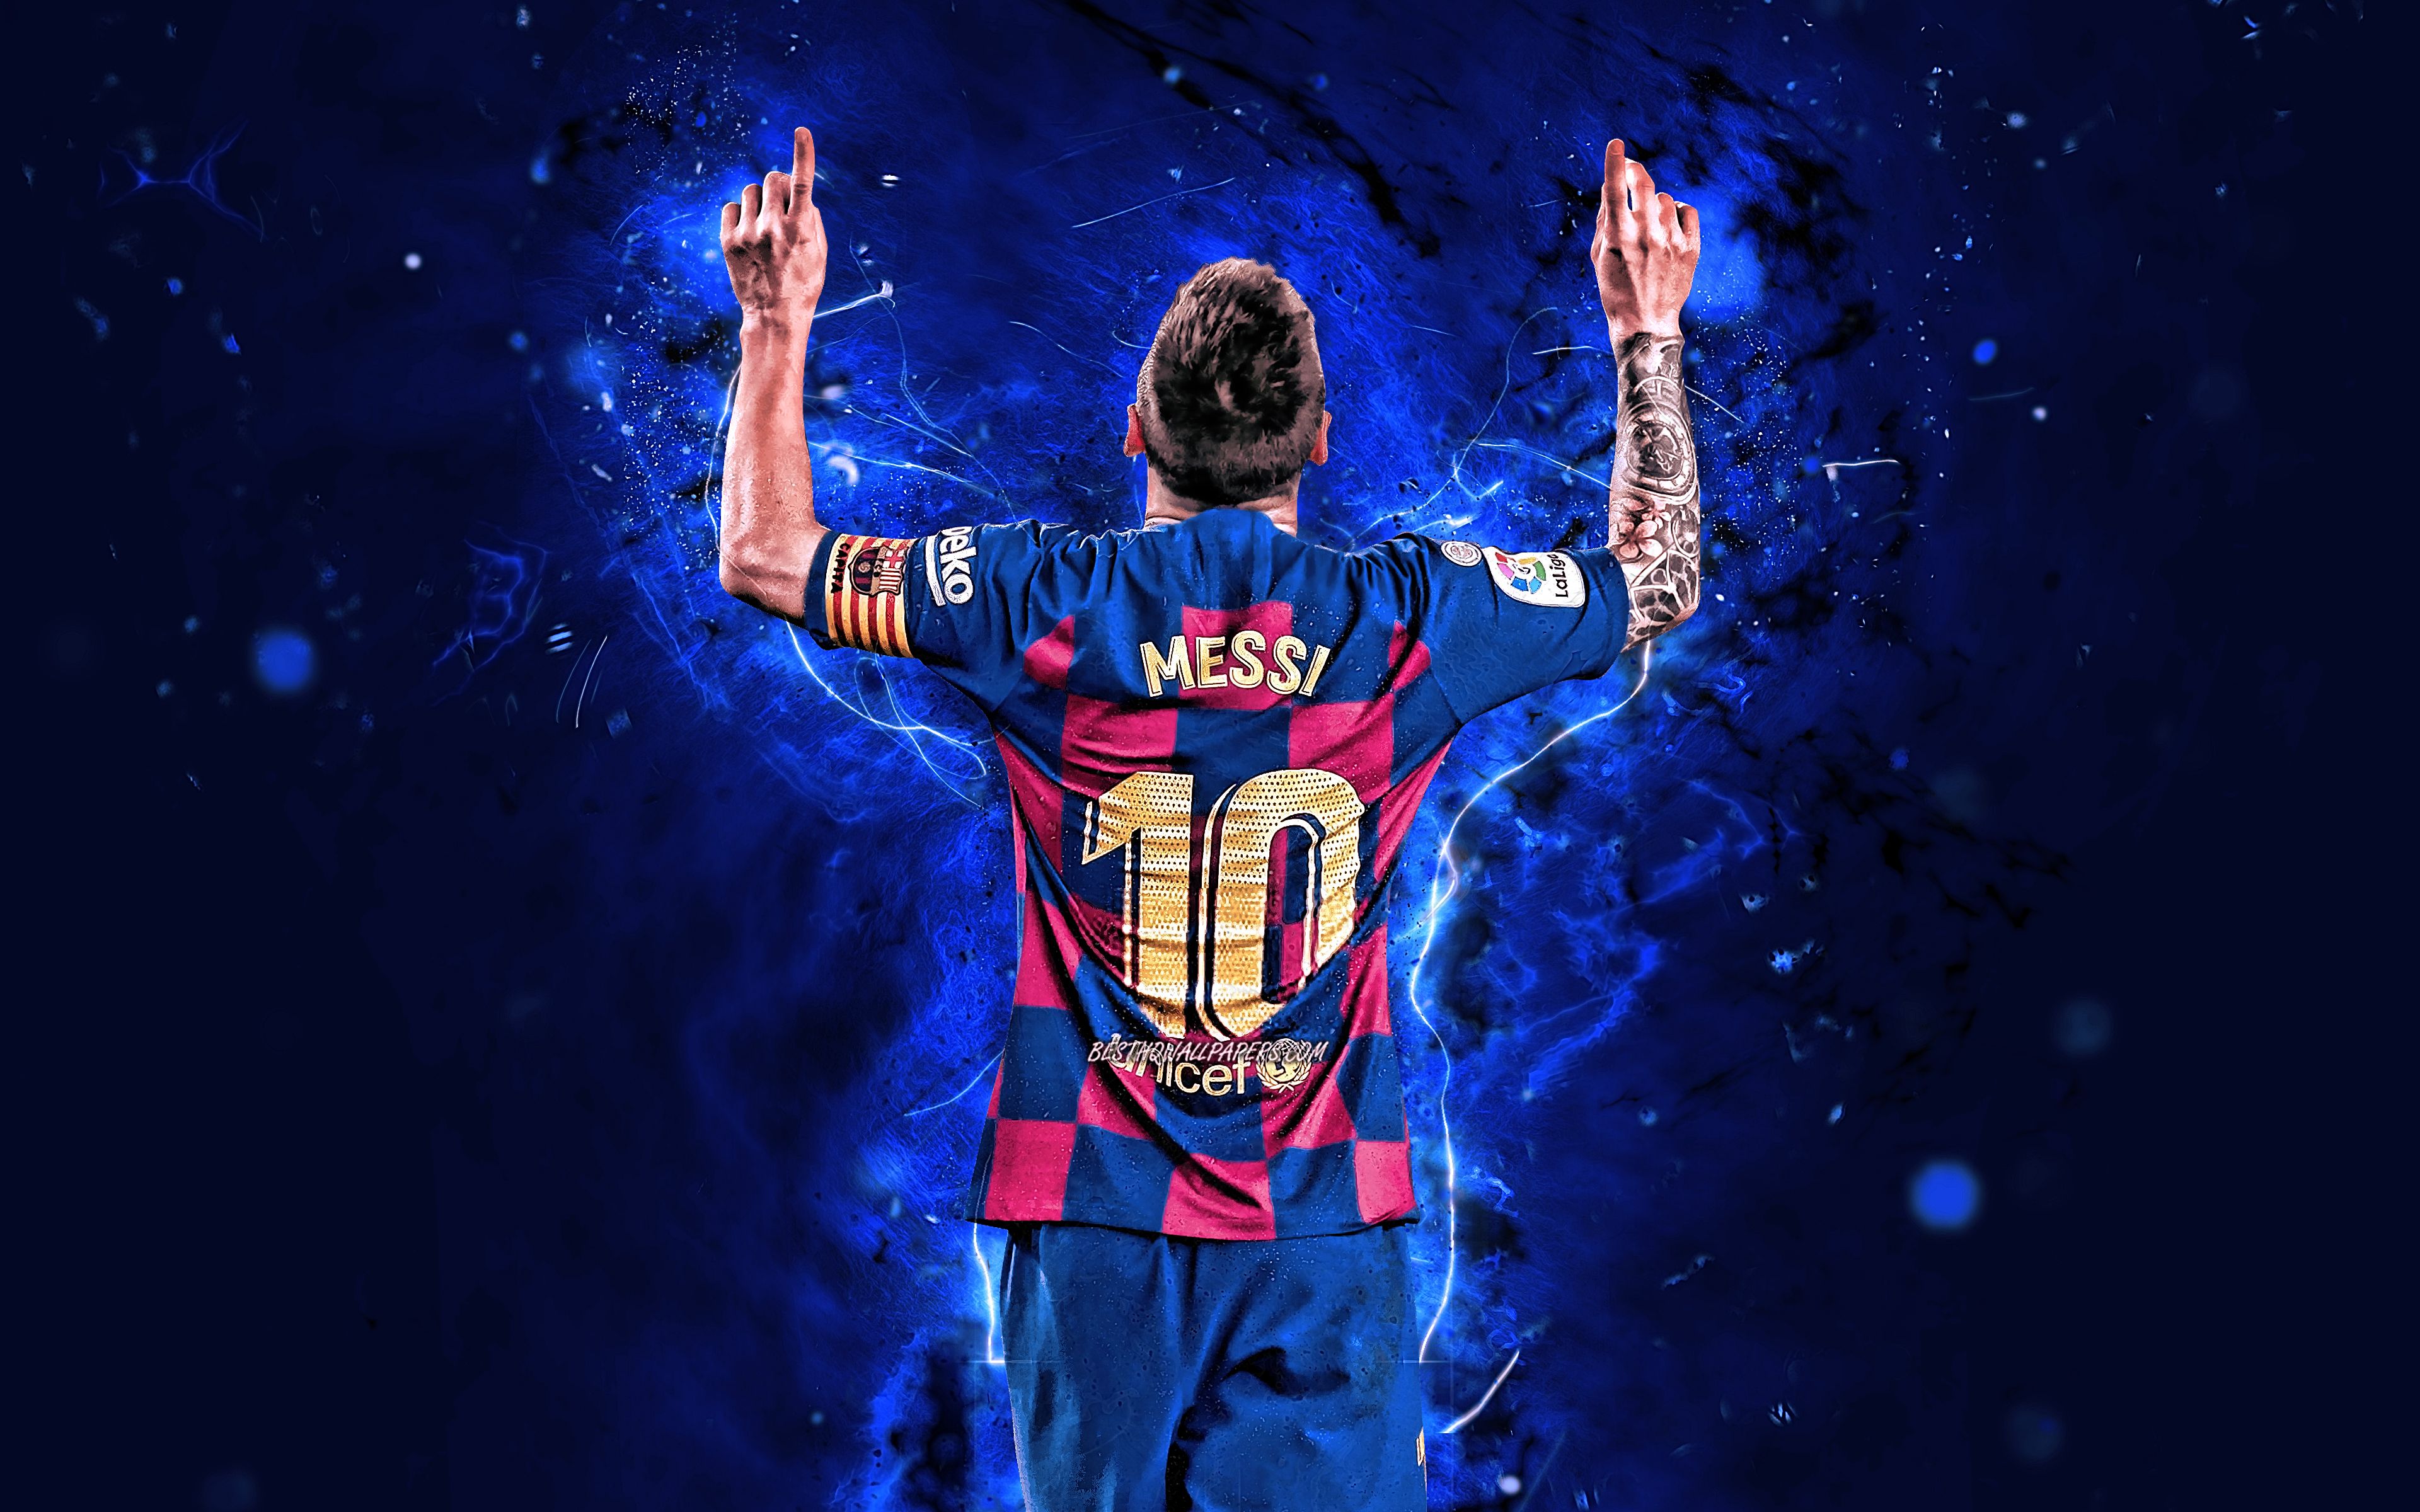 Chào mừng đến với trang web của chúng tôi, nơi bạn có thể tải xuống miễn phí bức ảnh Messi độc đáo, tuyệt đẹp và chất lượng cao. Tự hào với tỉ lệ nén tối đa, thời gian tải xuống sẽ nhanh chóng hơn bao giờ hết, giúp bạn tiết kiệm thời gian và sử dụng tấm hình nền tuyệt vời này ngay lập tức.